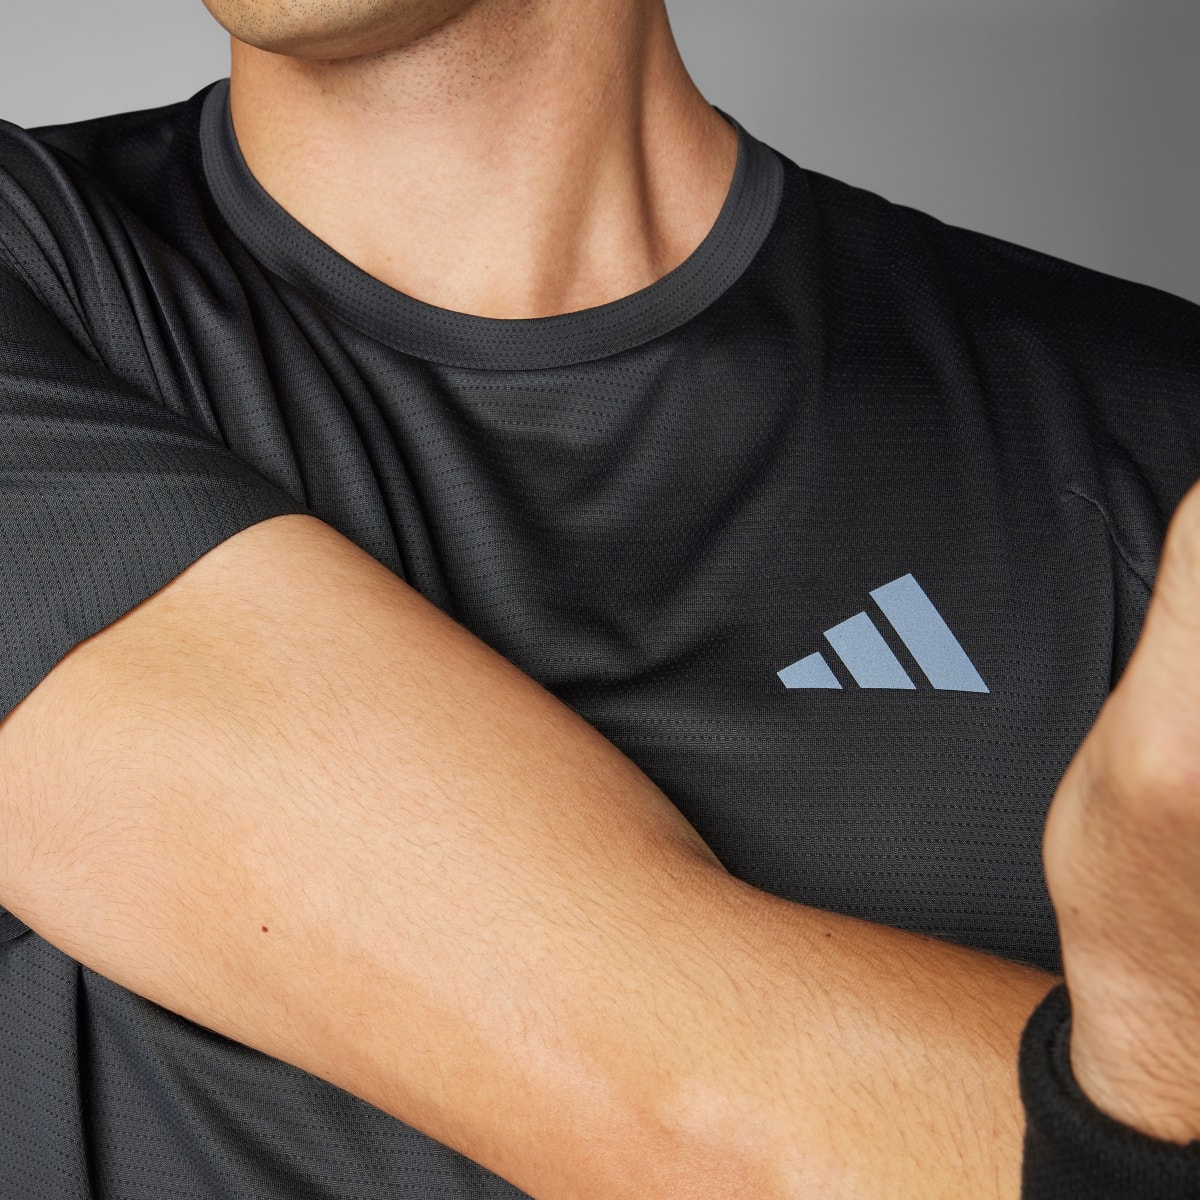 Adidas Adizero Running T-Shirt. 5